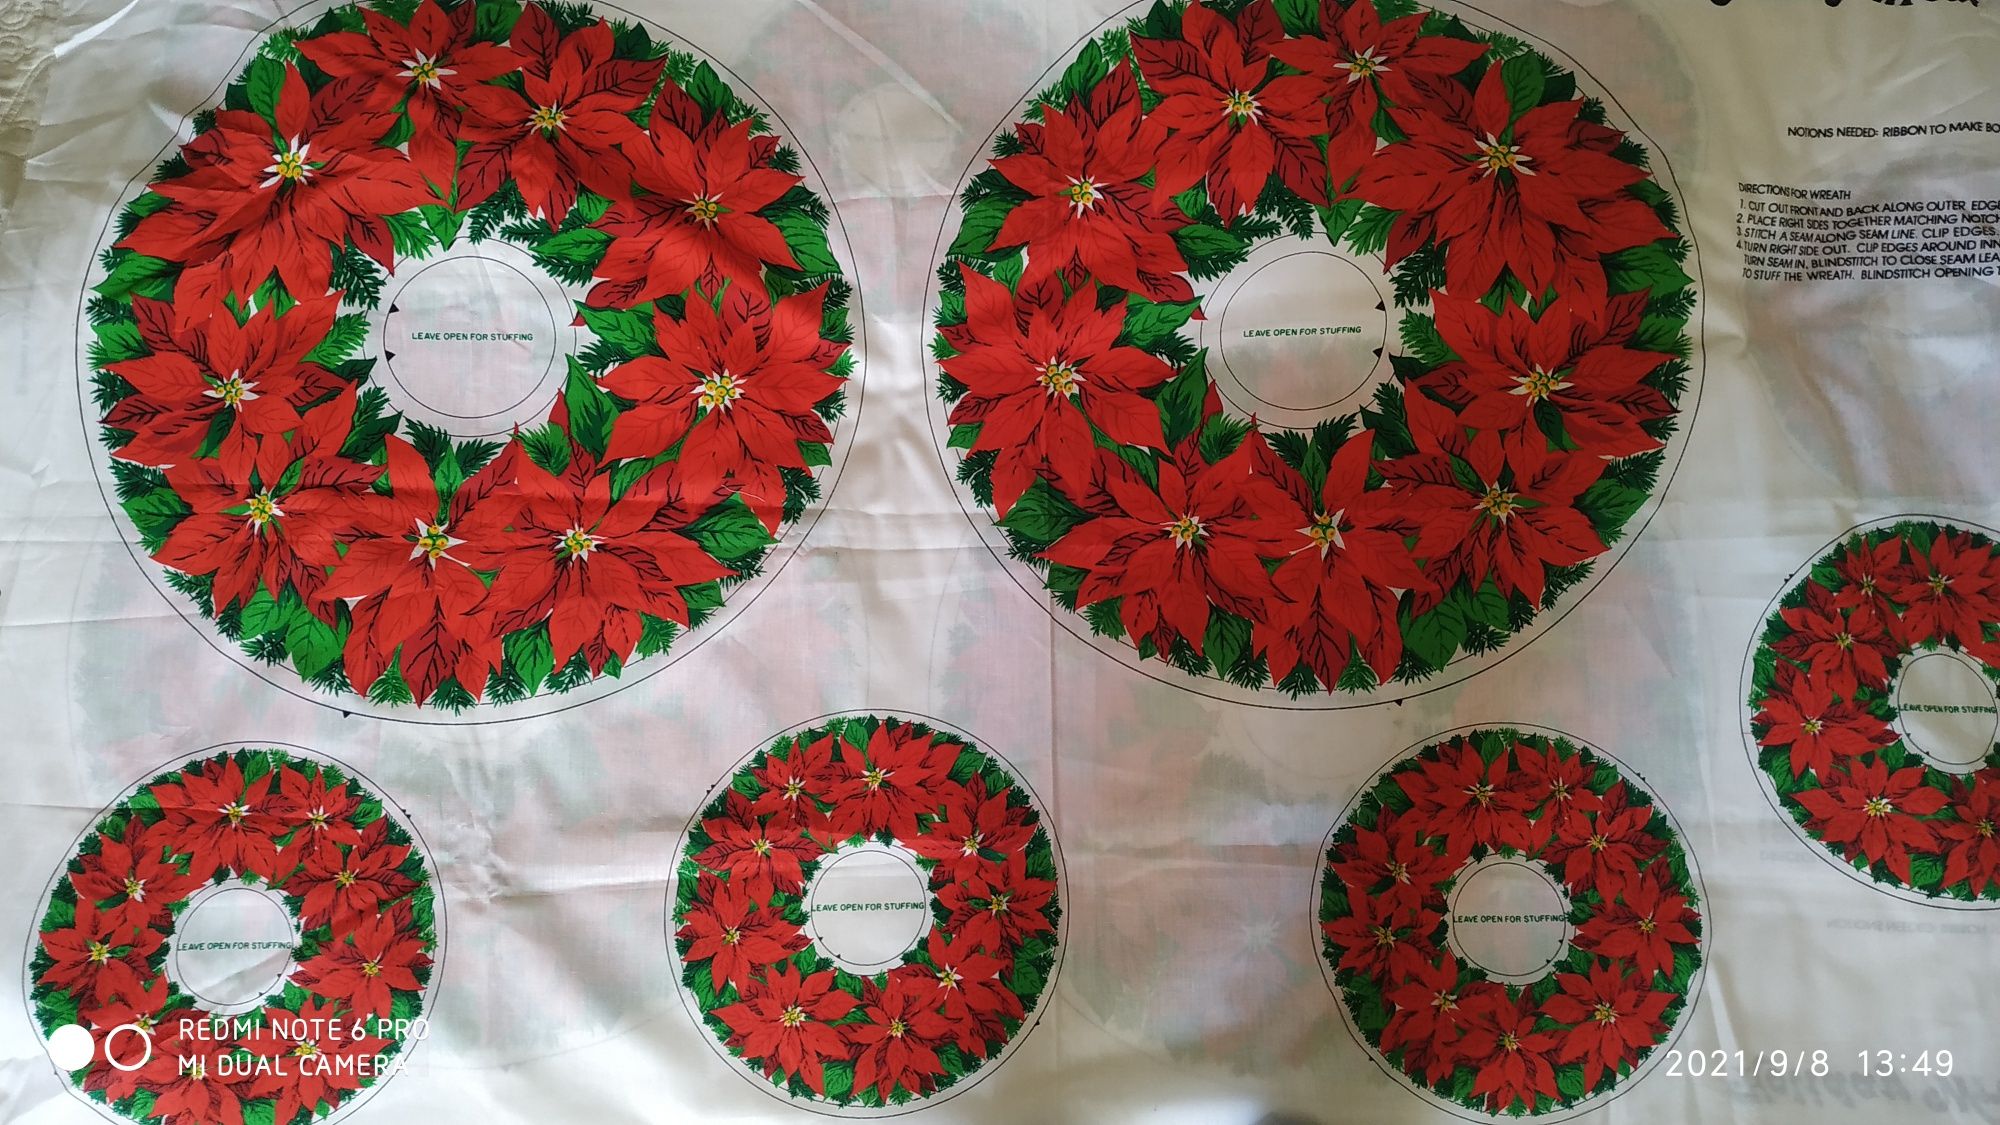 Ткань  Holiday wreaths, для пошиву новогодних подушек